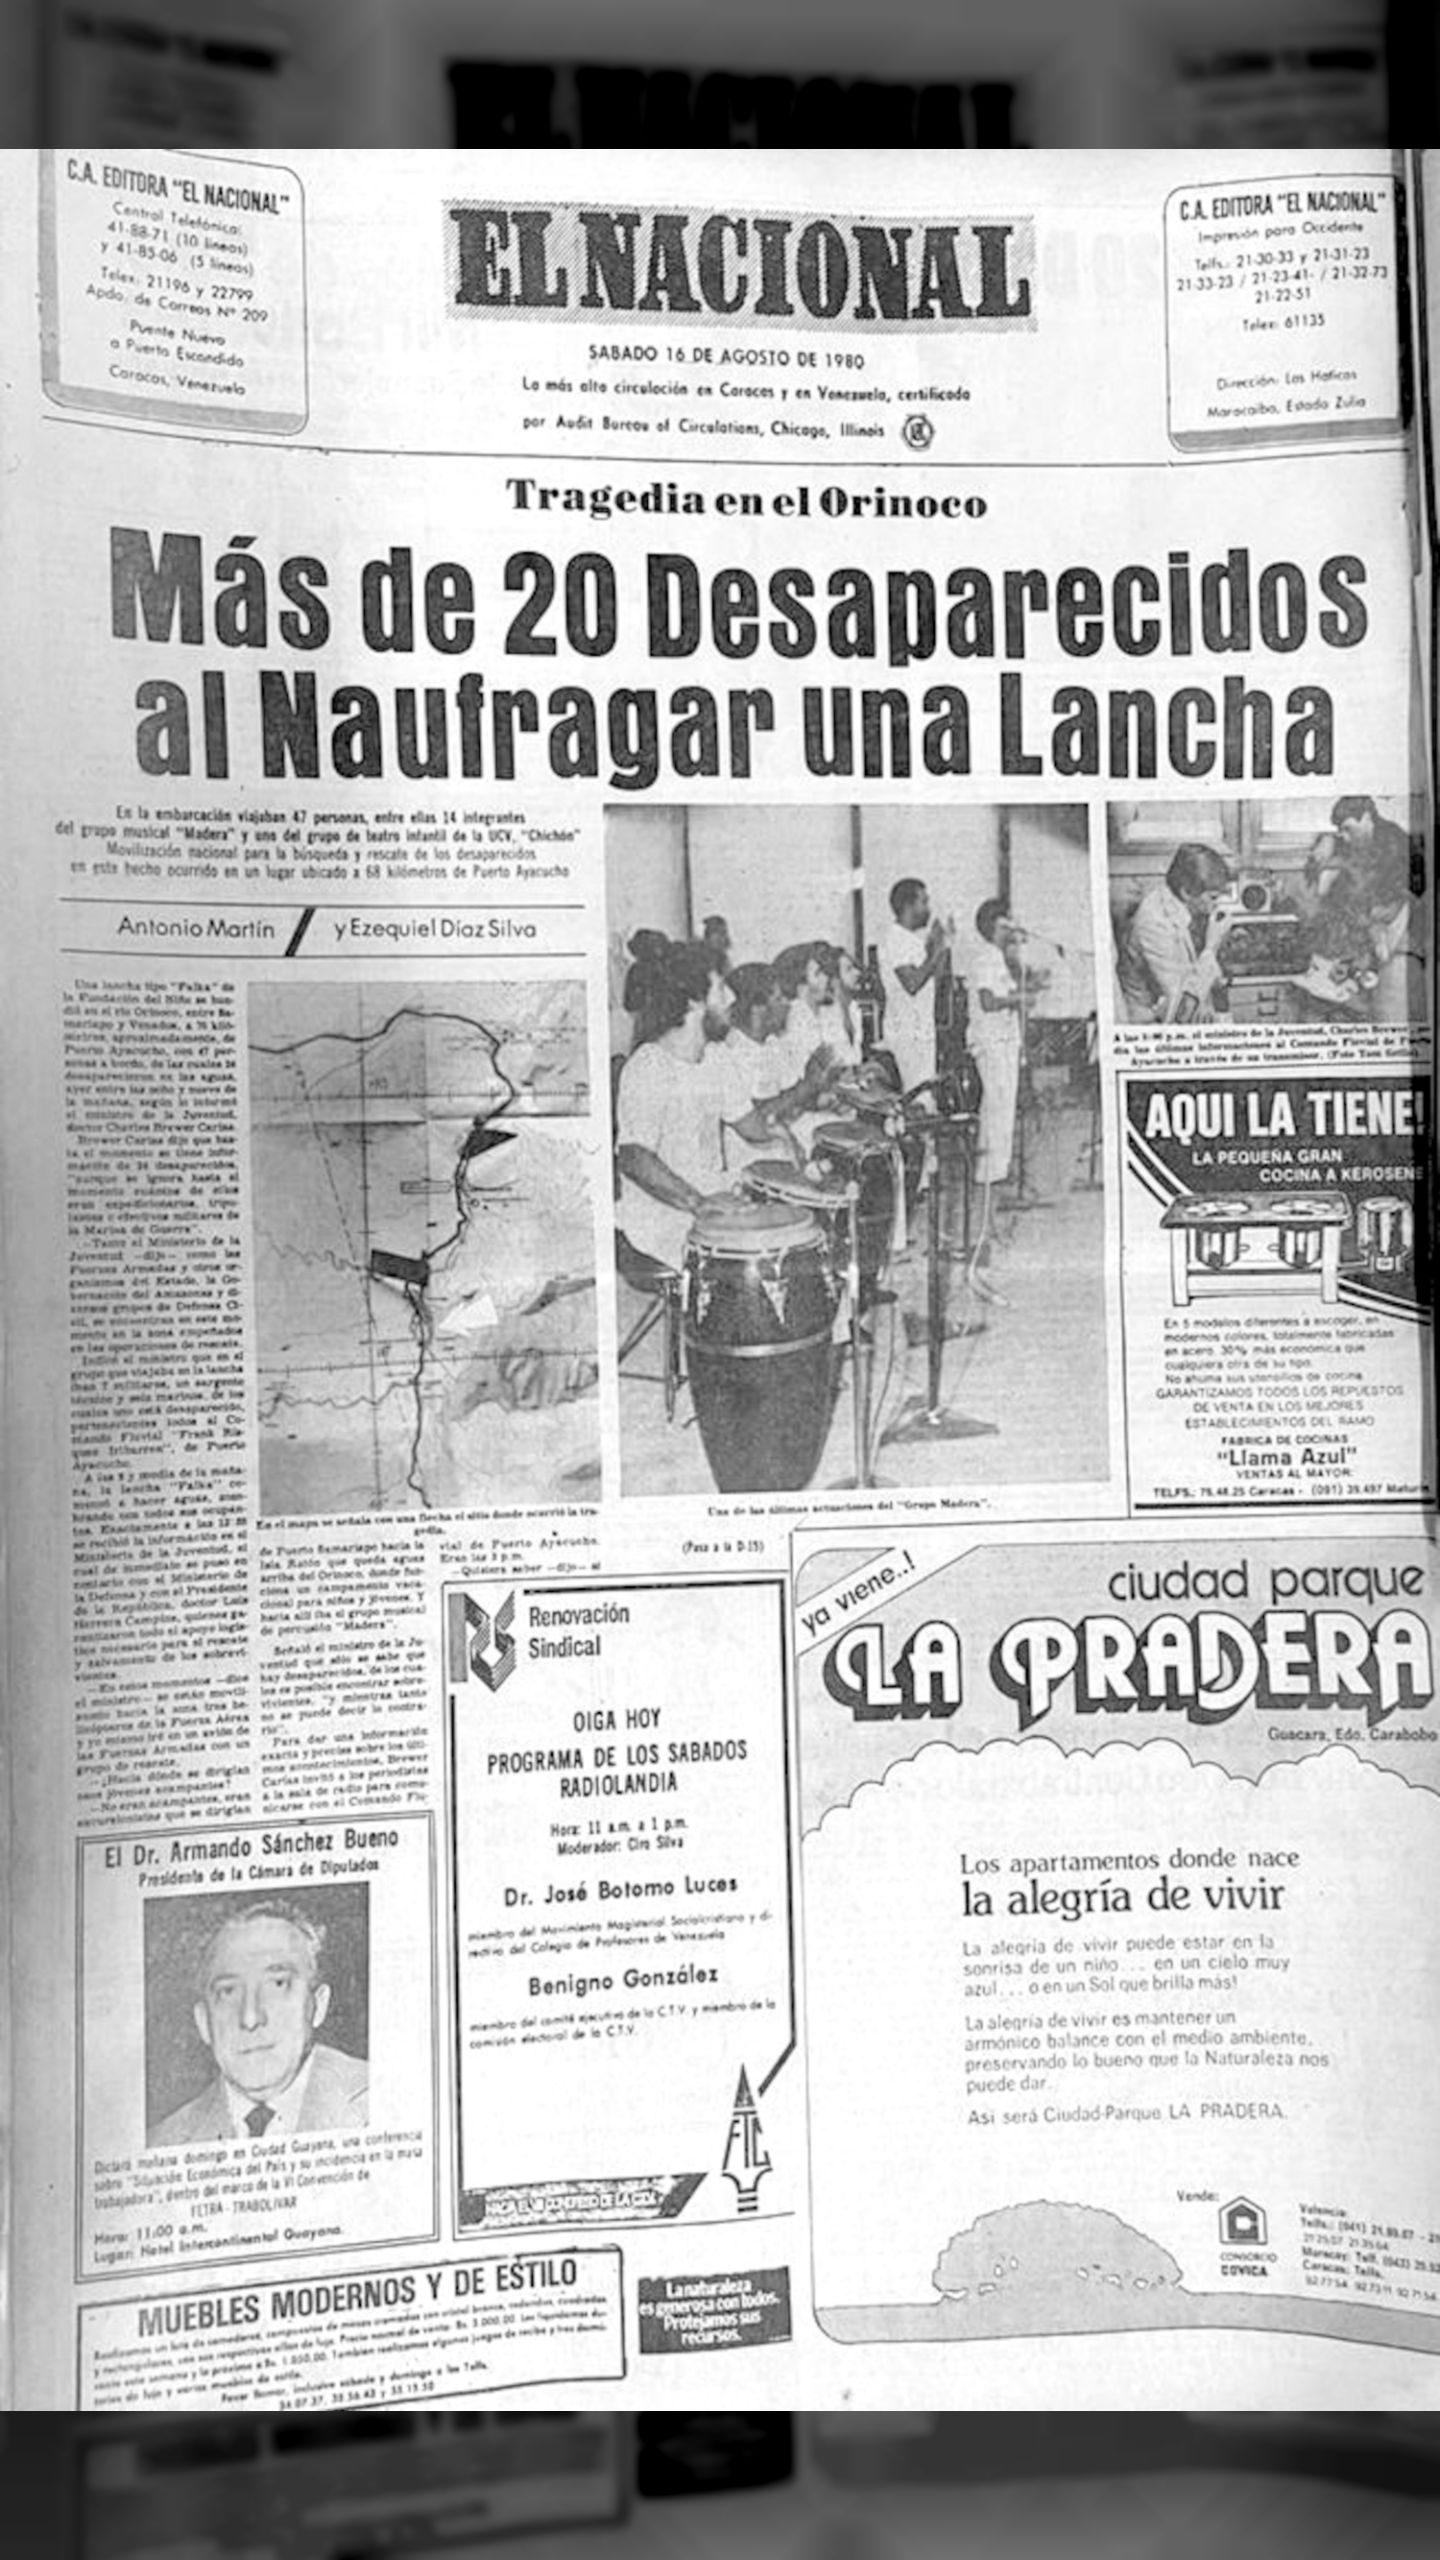 La tragedia del Orinoco (El Nacional, 16 de agosto 1980)